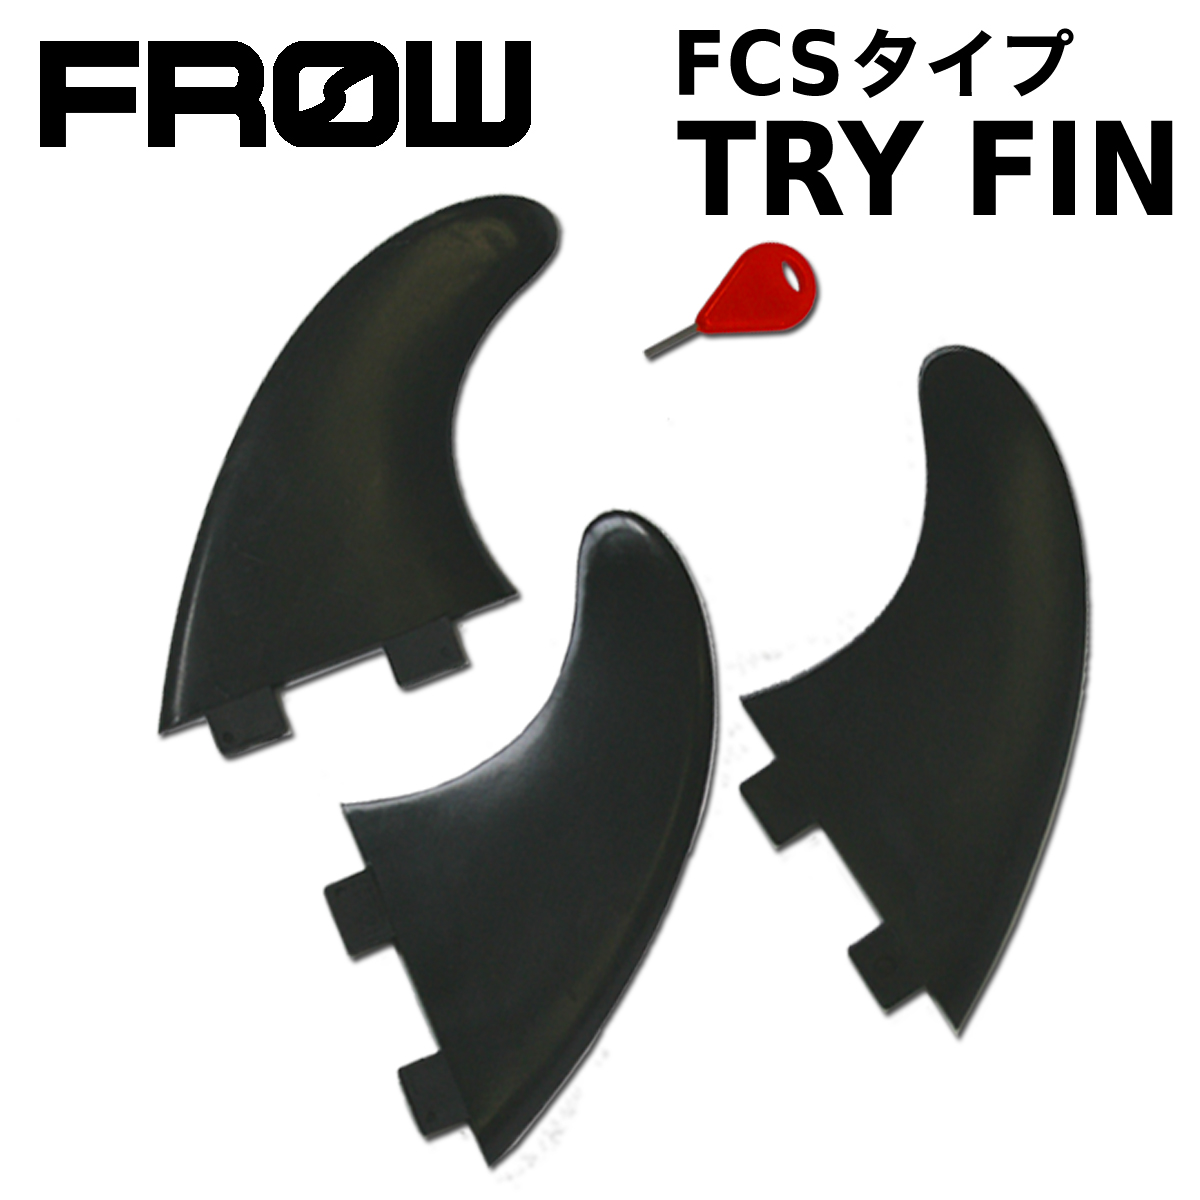 FROW フロー フィン トライ FCS ファンボード ショートボード フィンキー付 ブラック サーフィン サーフボード 初心者 ビギナー